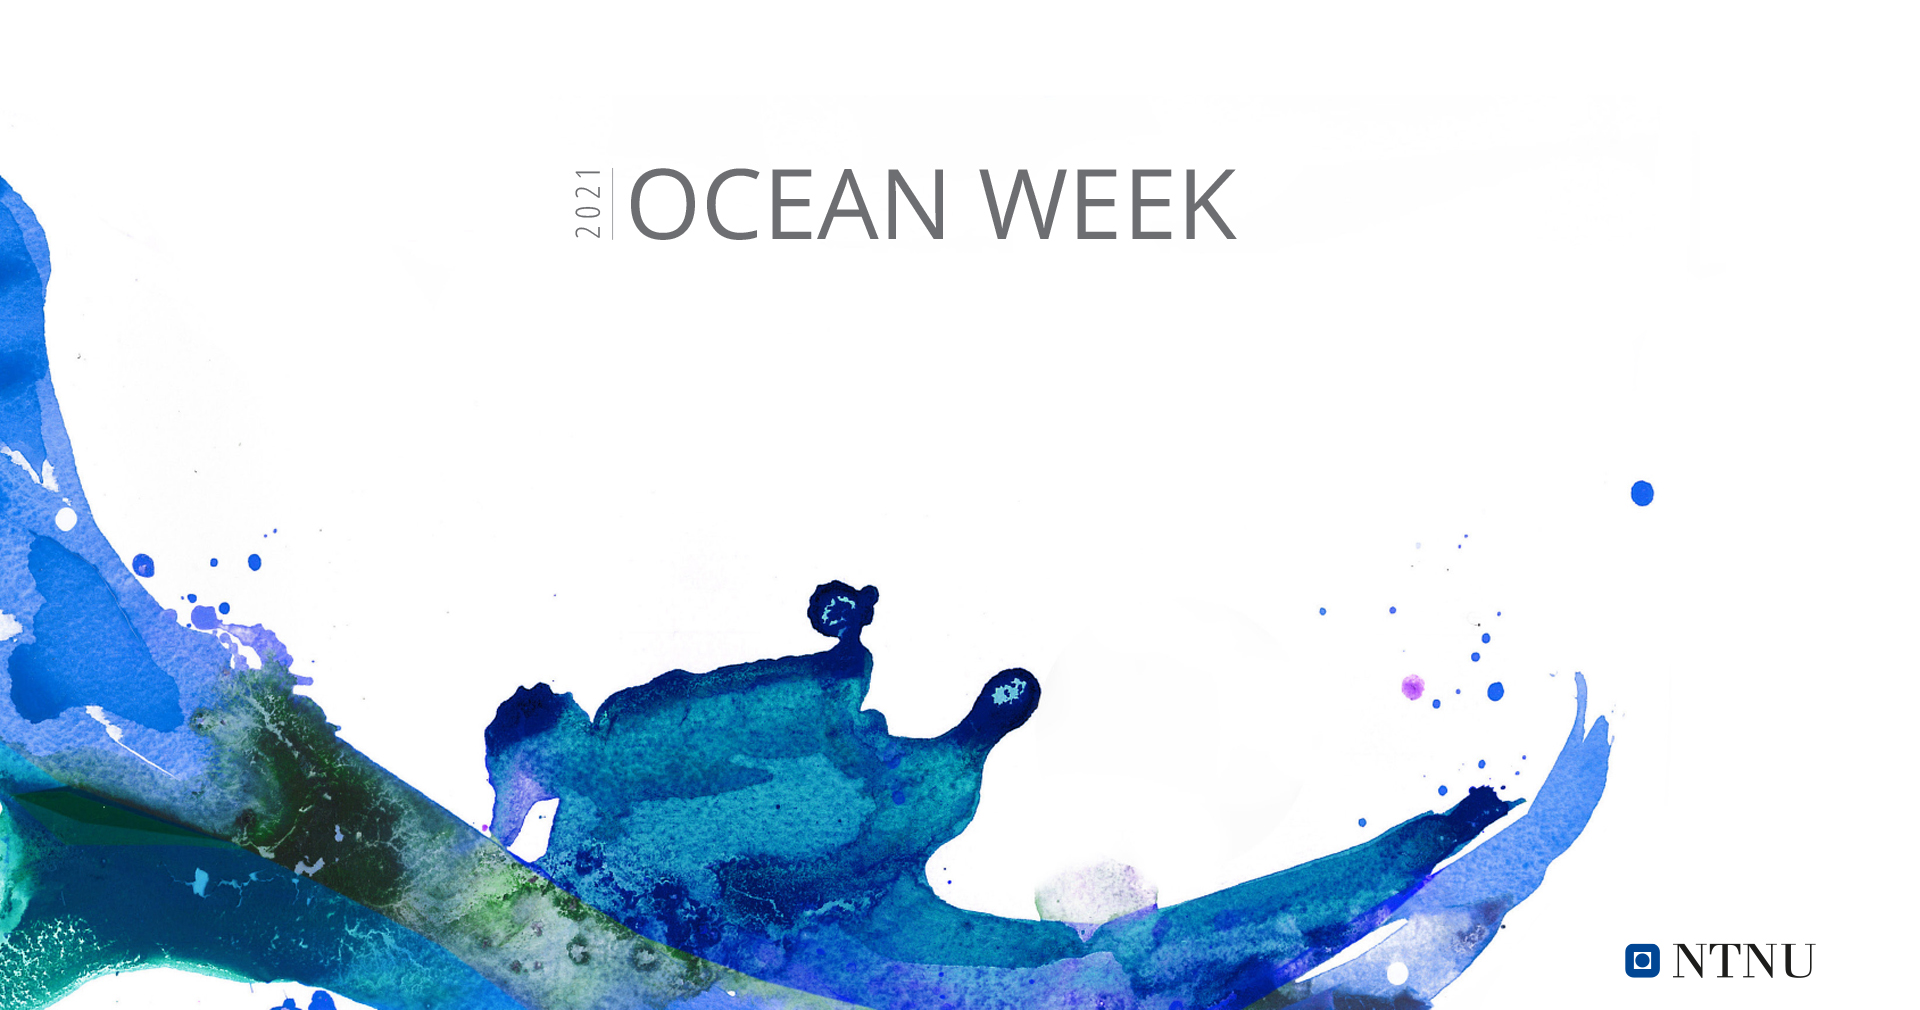 NTNU Ocean Week 2021